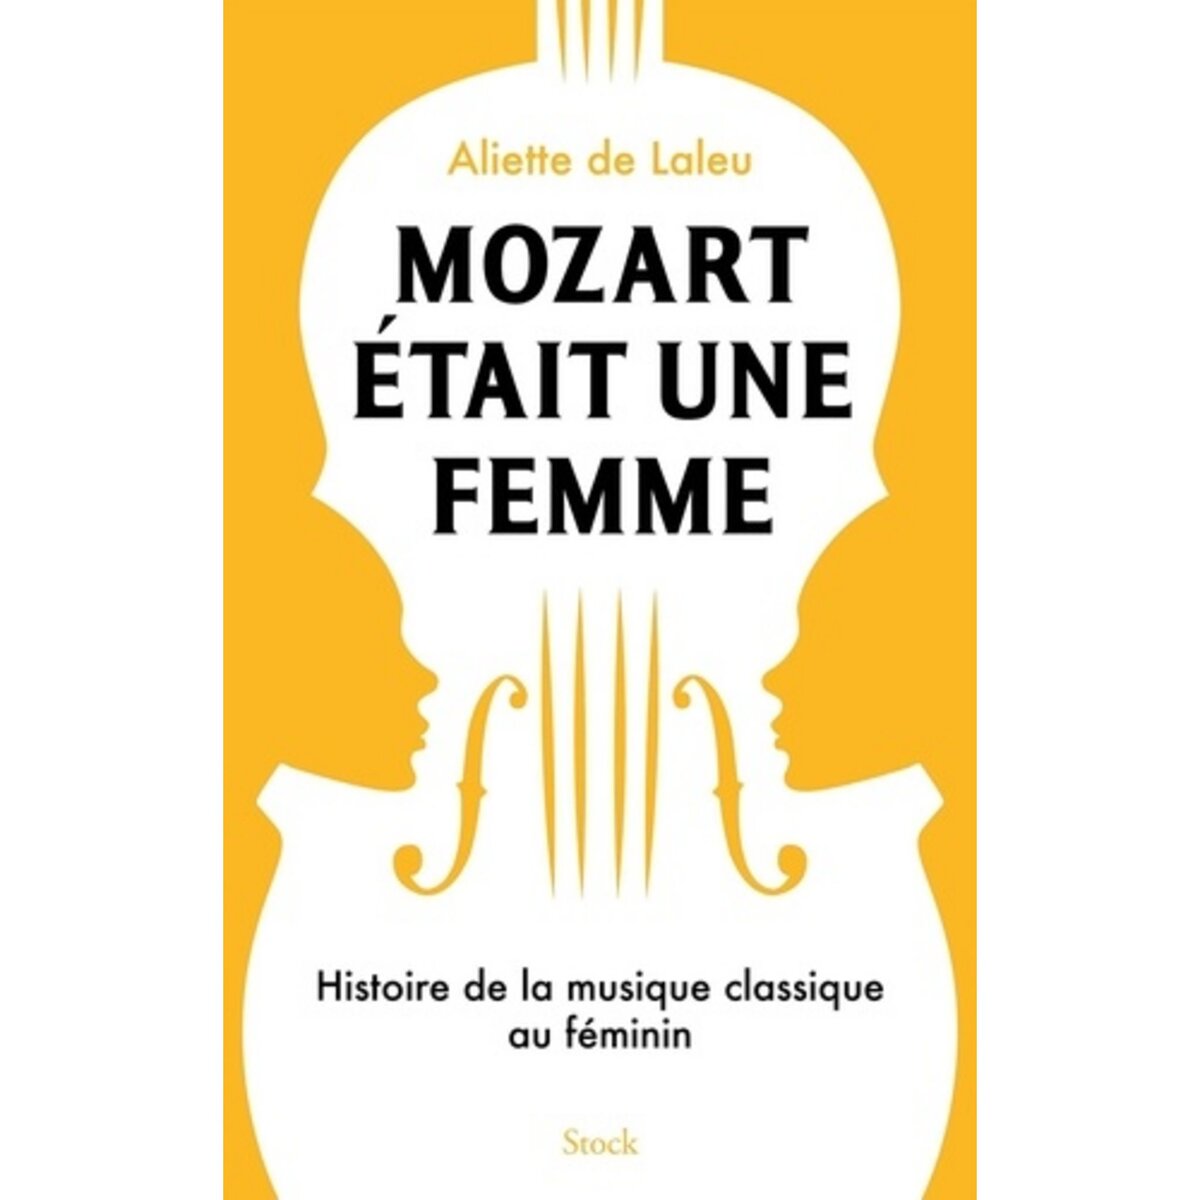  MOZART ETAIT UNE FEMME. HISTOIRE DE LA MUSIQUE CLASSIQUE AU FEMININ, Laleu Aliette de